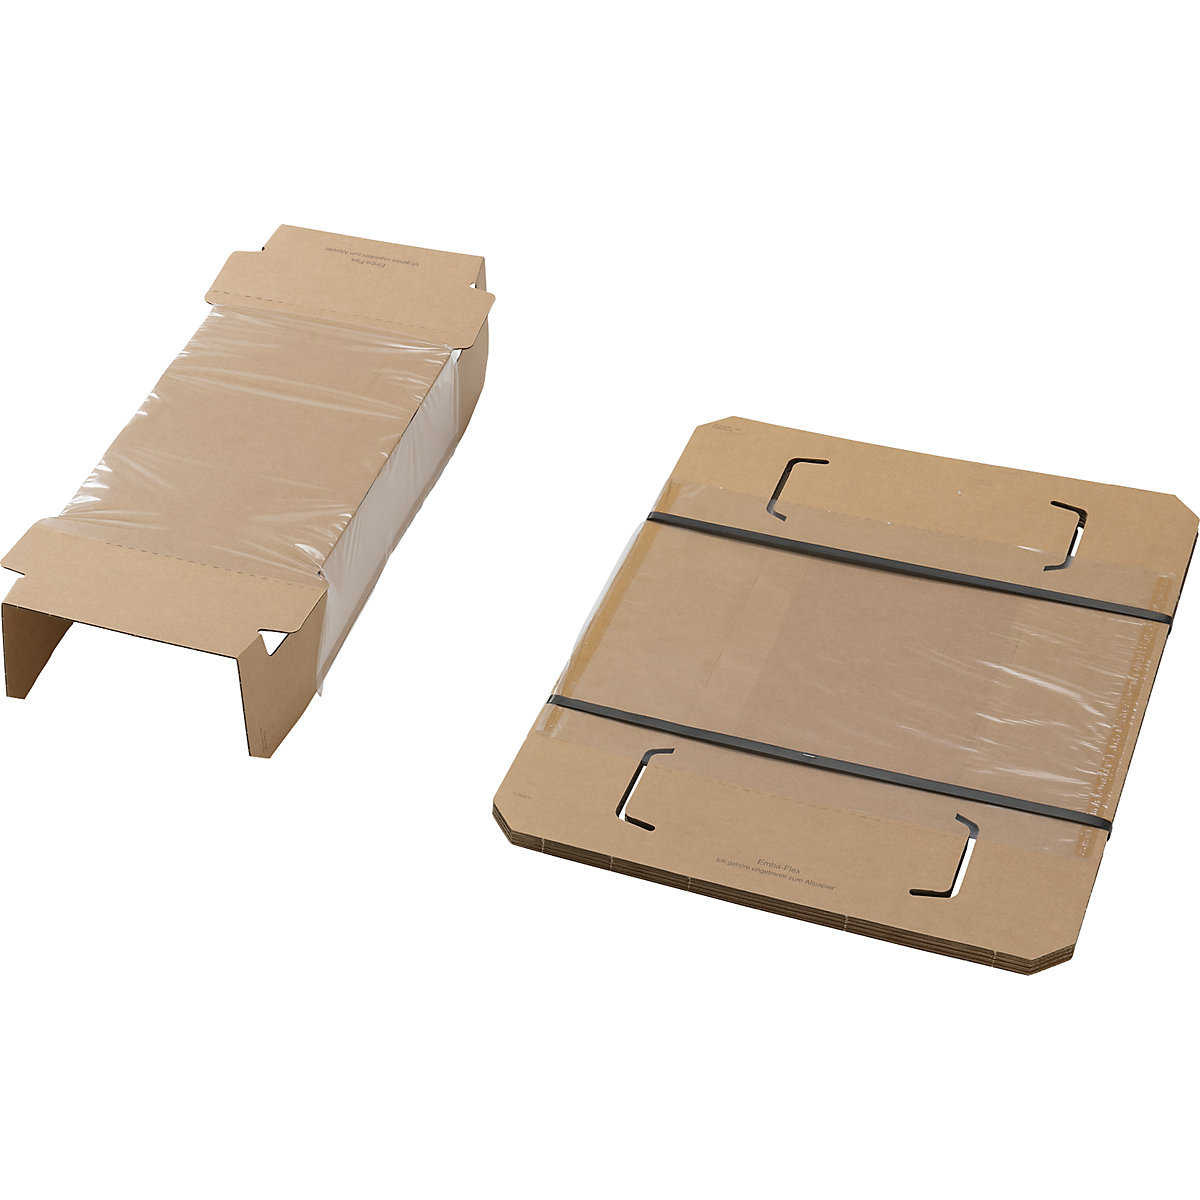 Embalaje de fijación, con pieza interior de fijación y caja protectora externa, UE 25 unid., para dimensiones de paquete de L x A x H 360 x 240 x 100 mm-2